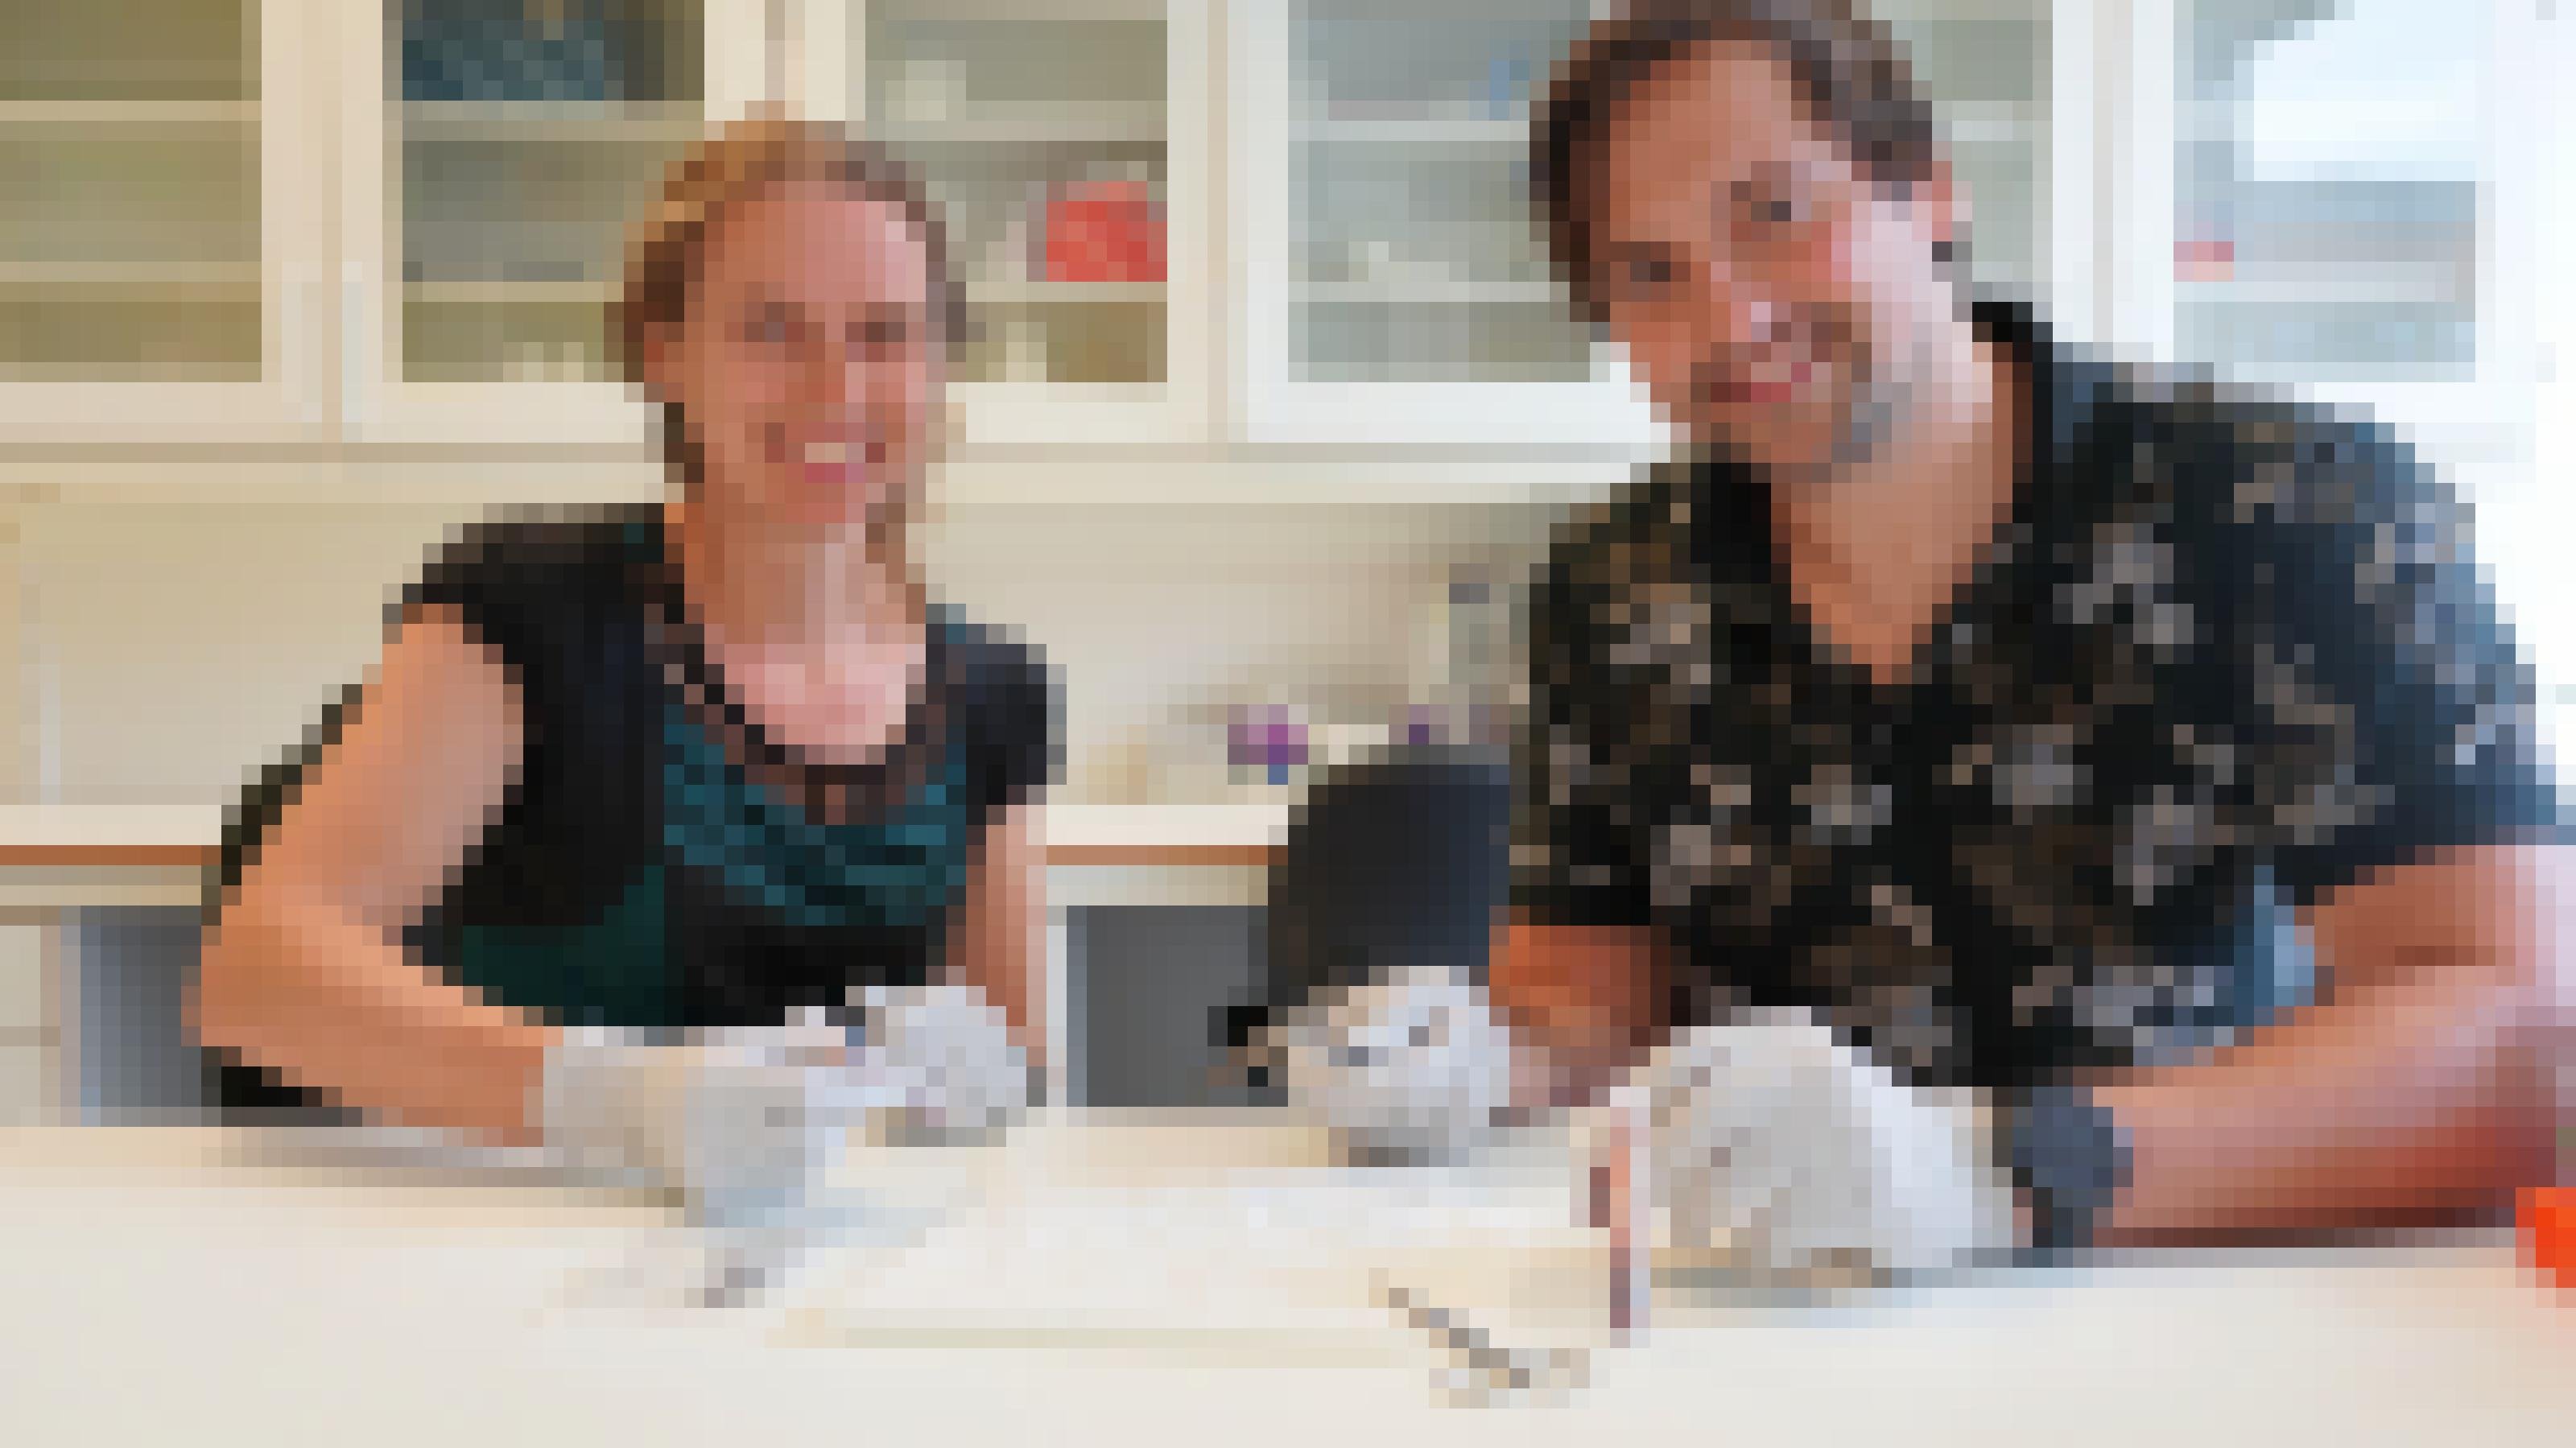 Zwei Wissenschaftler sitzen nebeneinander. Beide tragen Gummihandschuhe und haben Pinzetten in der Hand